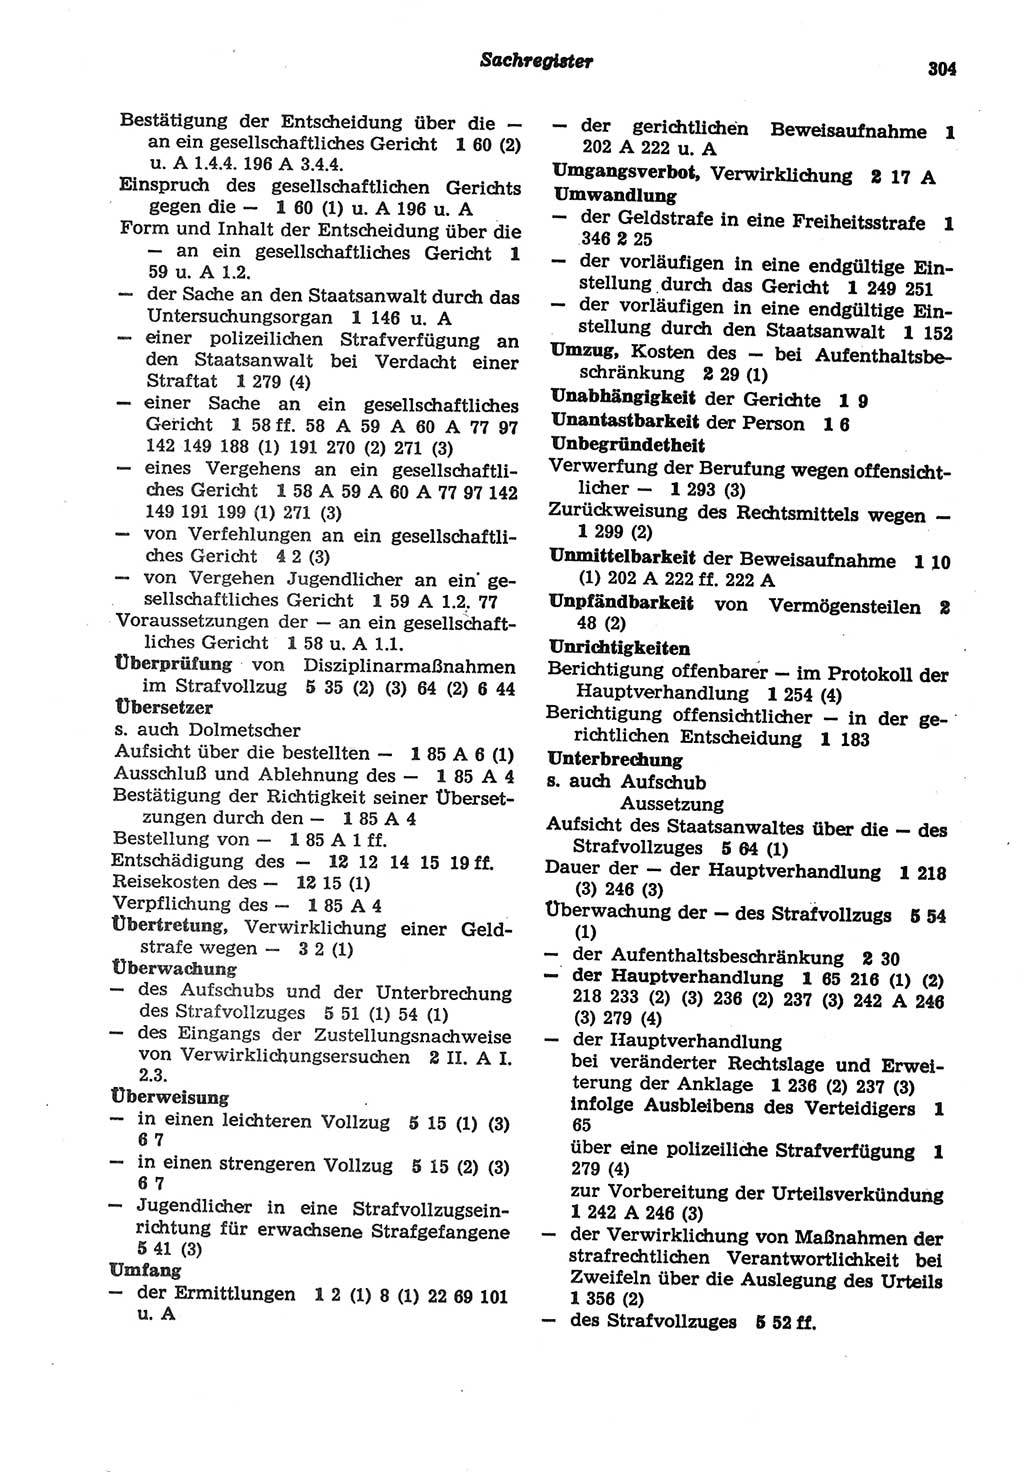 Strafprozeßordnung (StPO) der Deutschen Demokratischen Republik (DDR) sowie angrenzende Gesetze und Bestimmungen 1977, Seite 304 (StPO DDR Ges. Best. 1977, S. 304)